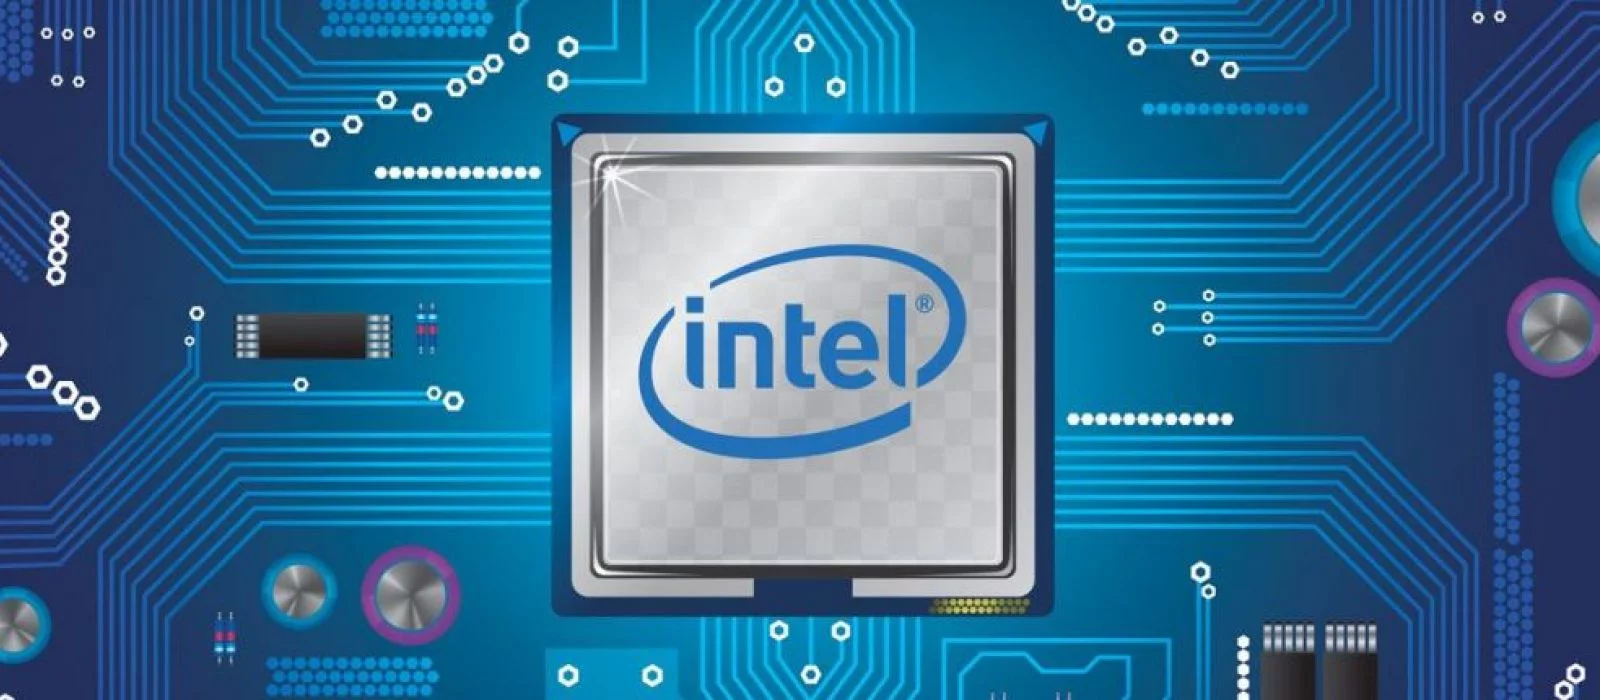 Intel start. Альдо Intel старт. Intel модели телефонов. Intel n5095.